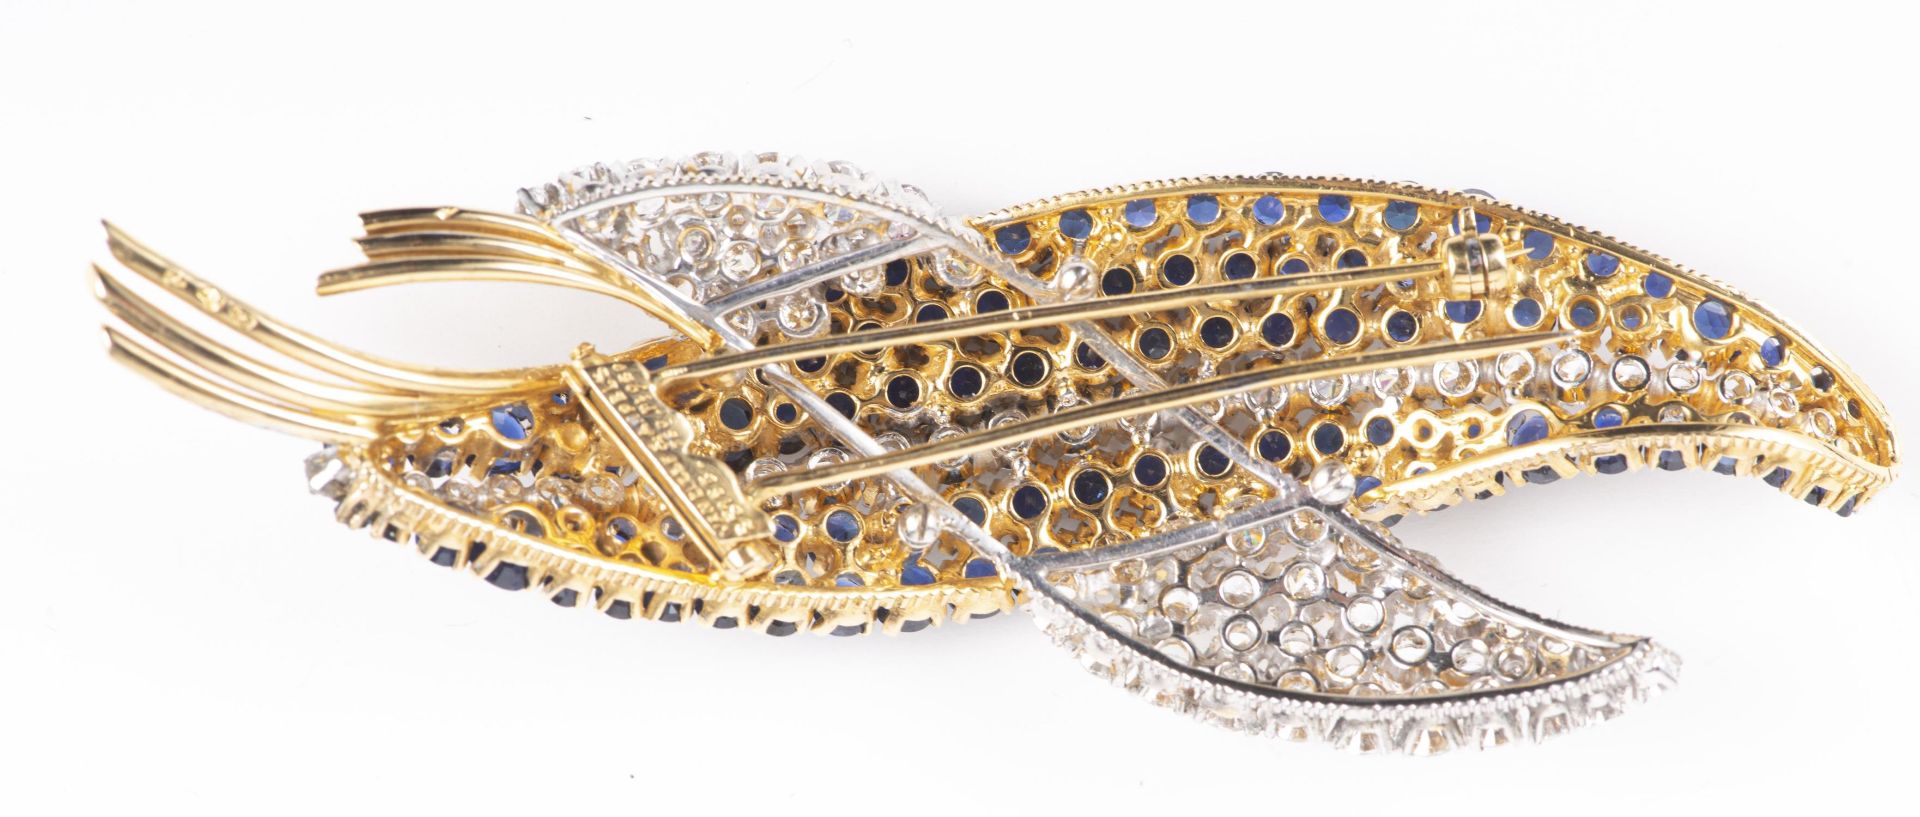 VAN CLEEF & ARPELS, broche double feuille en or et platine avec diamants et saphirs - Image 8 of 18